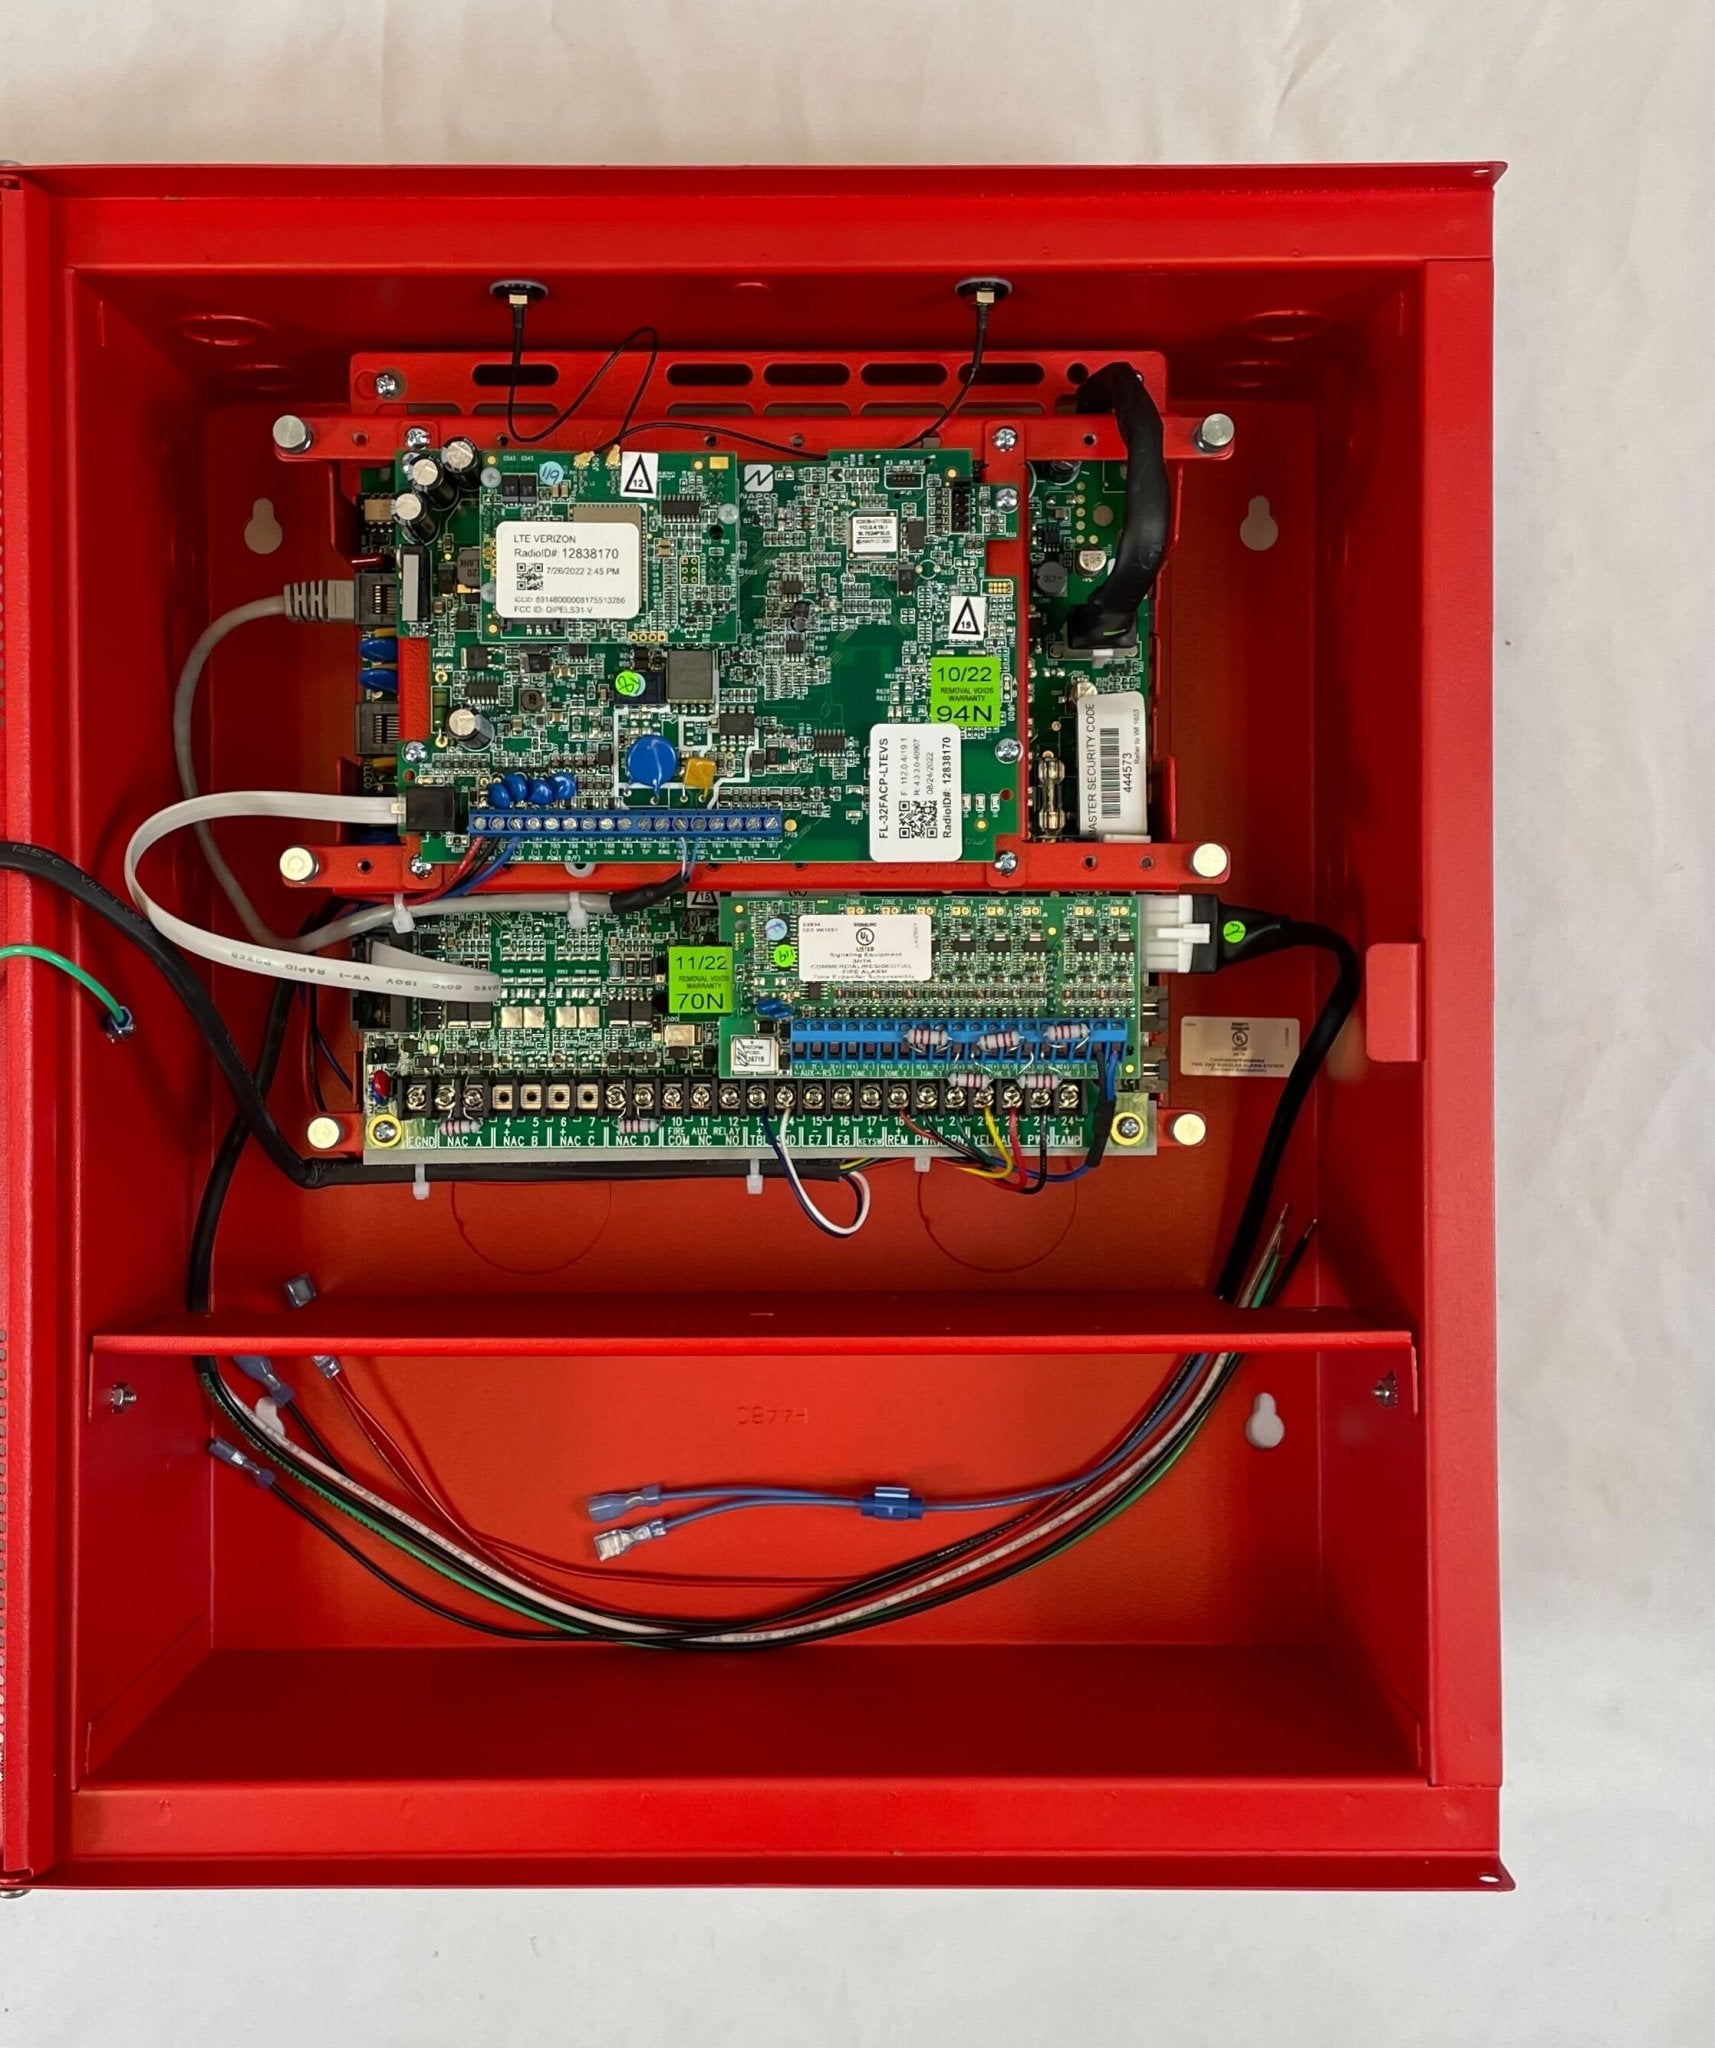 Napco FL-32FACP-LTEVS Fire Alarm Control Unit - The Fire Alarm Supplier